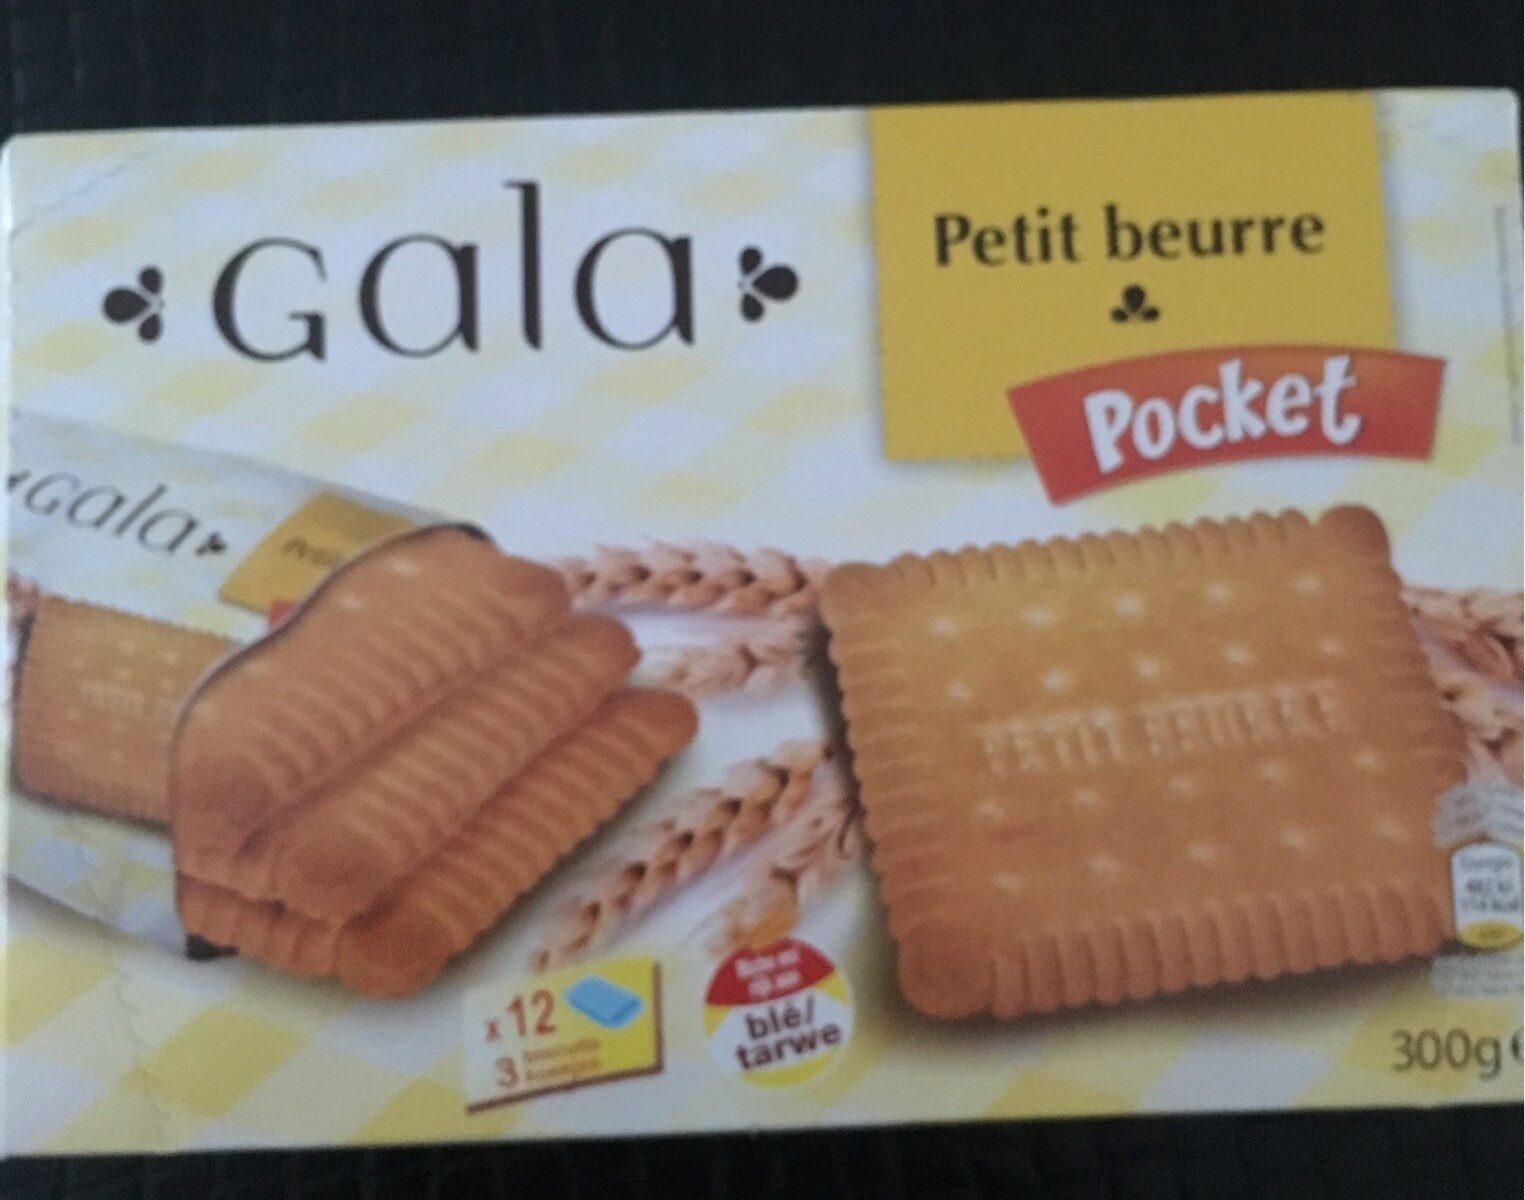 Petit beurre pocket gala, Biscuits au beurre - Produit